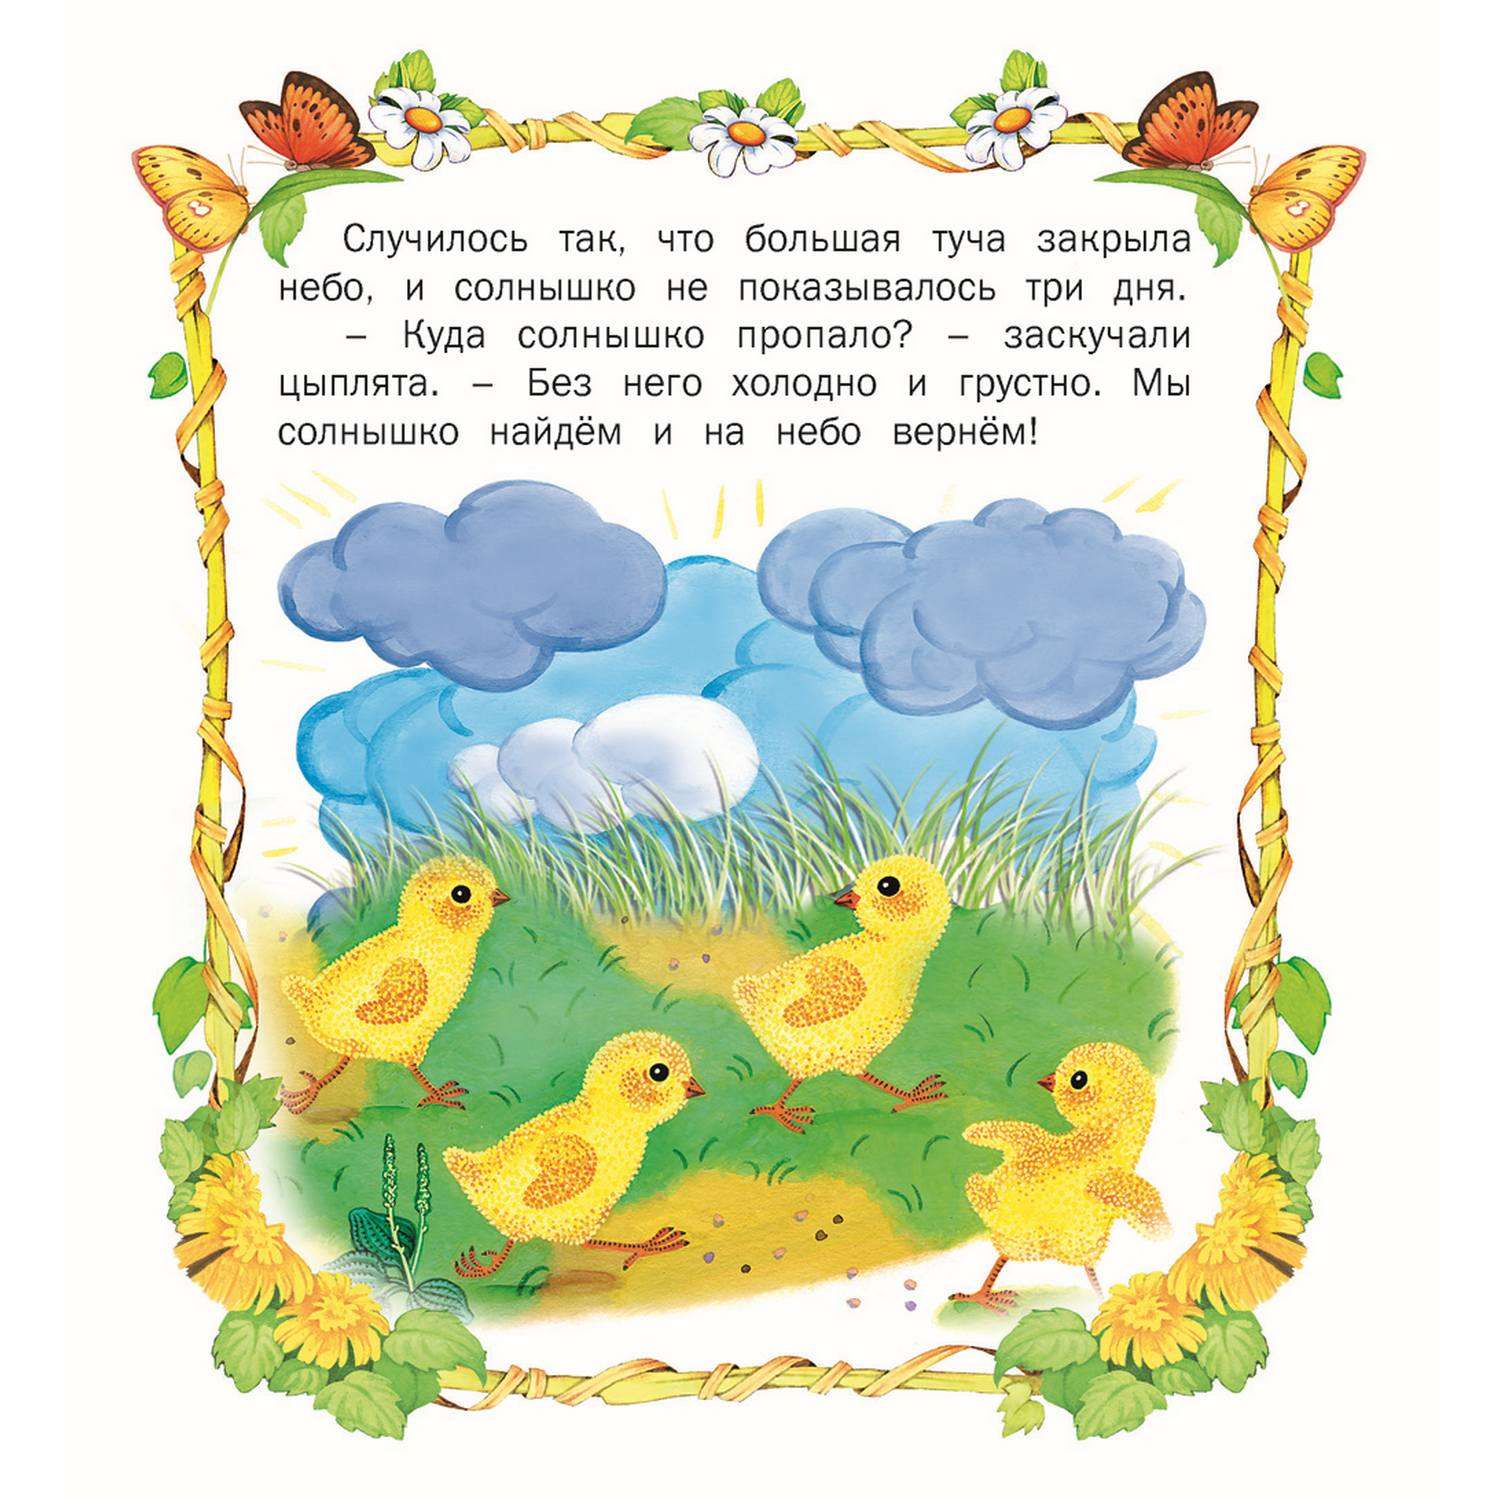 Книга Русич сборник стихов и сказок для детей. Комплект 5 шт - фото 9